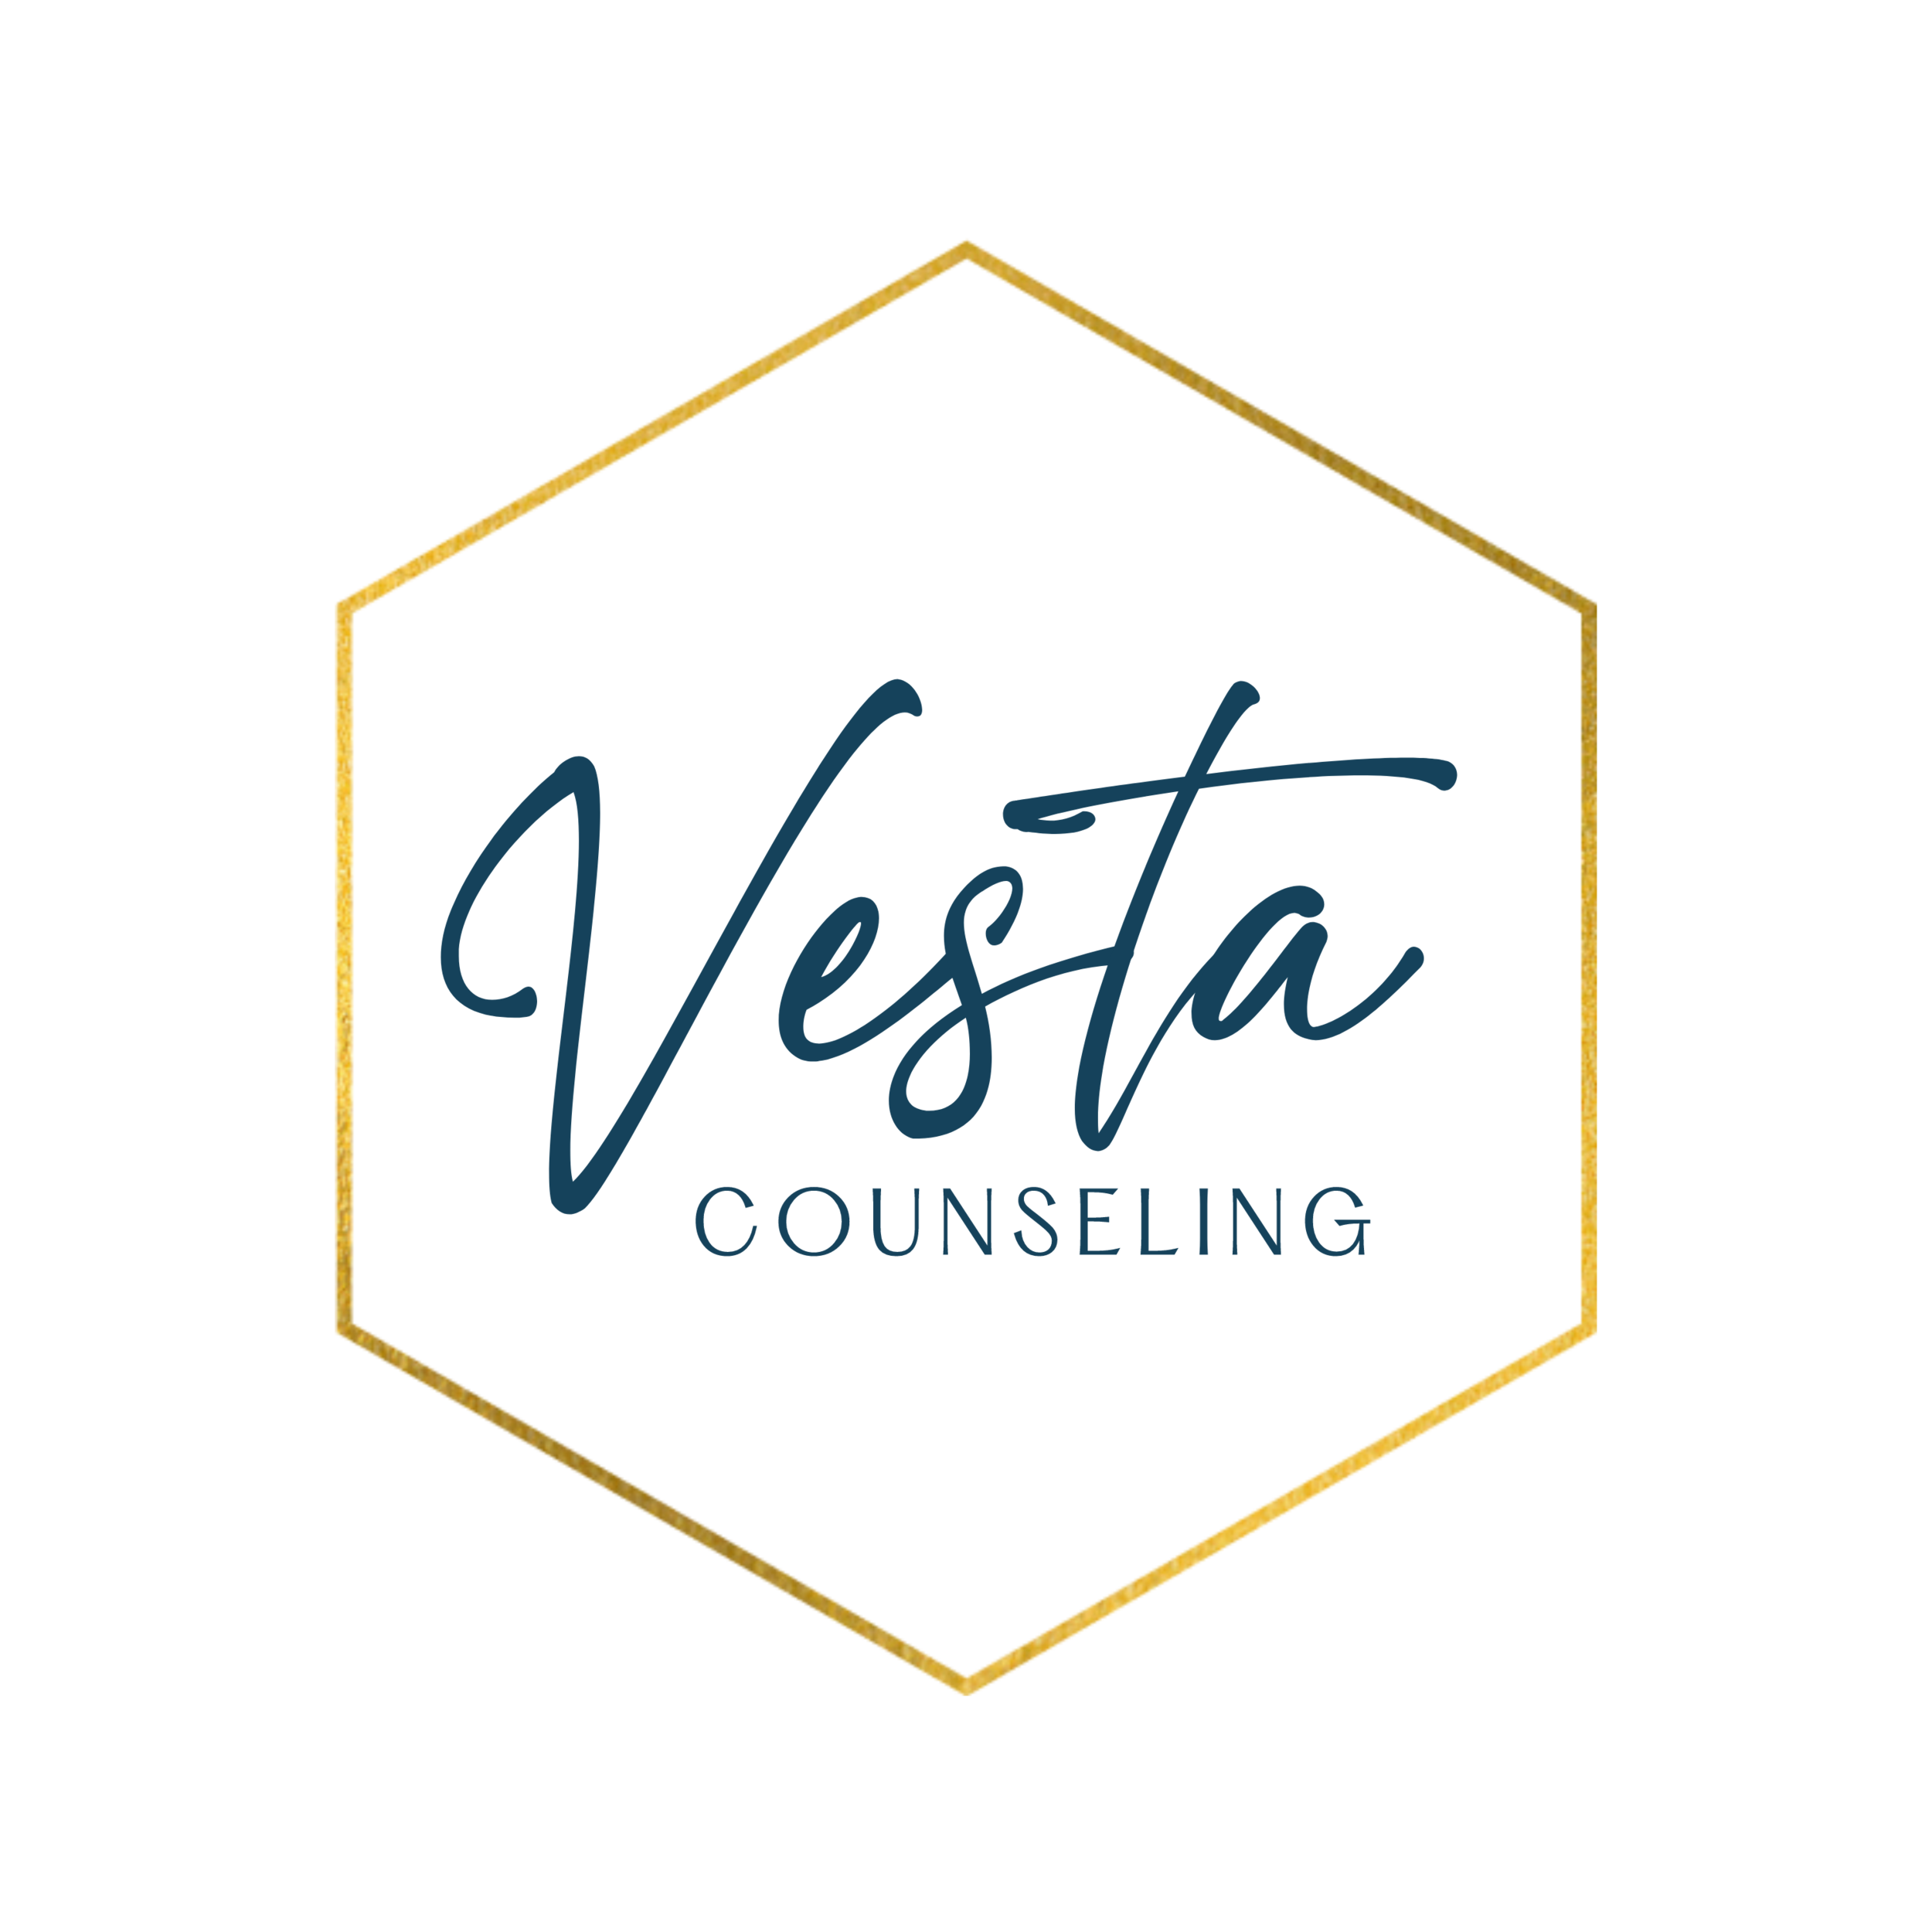 Vesta Counseling